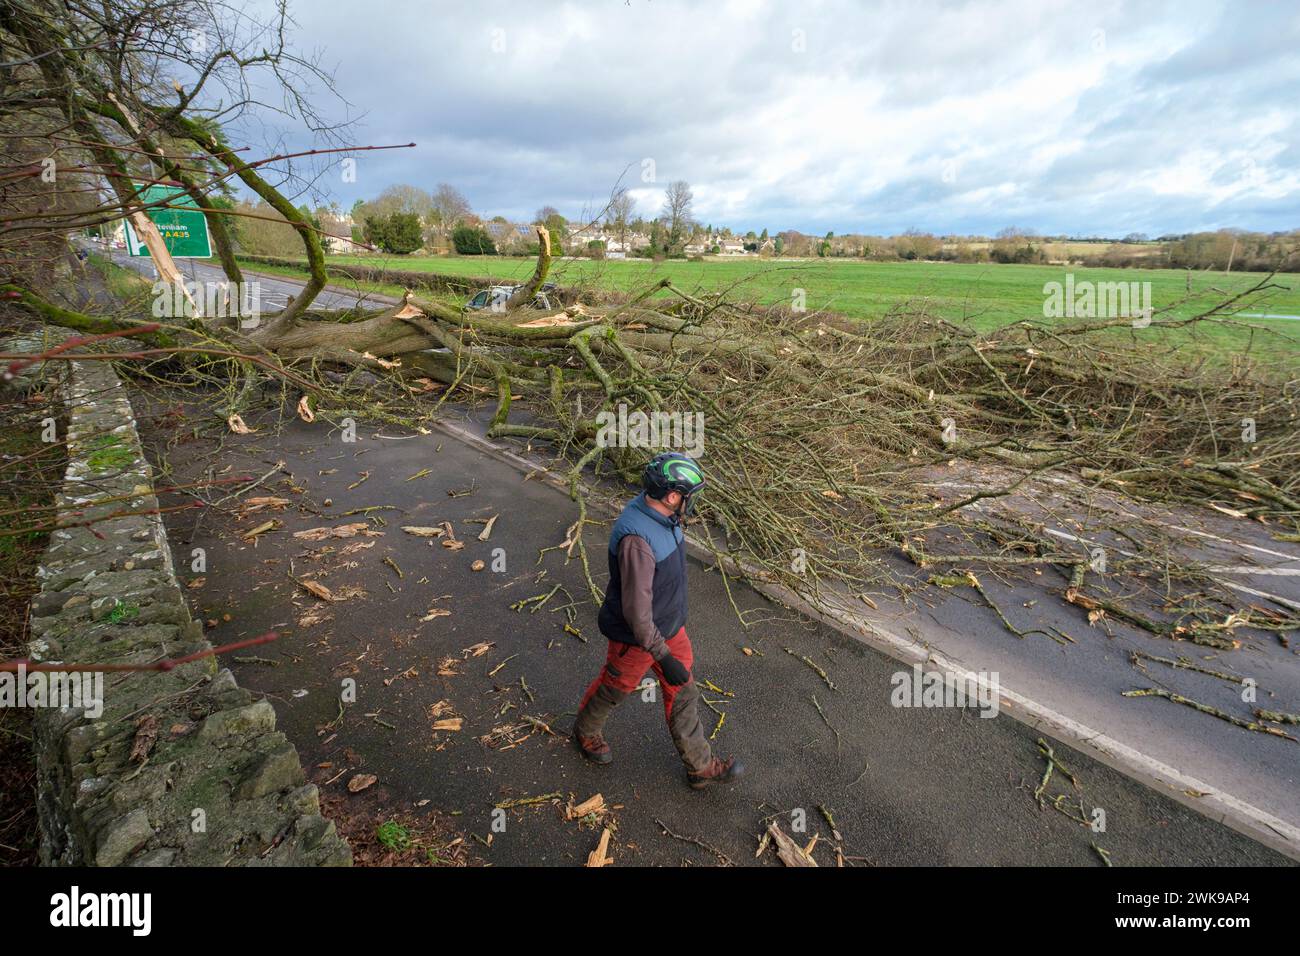 L'A417 (A435) à Cirencester complètement bloqué acheter un arbre tombé abattu dans les vents forts de la tempête Pia. Une petite voiture de Vauxhall a été prise sous les branches extérieures de l'arbre , les occupants seraient OK. Banque D'Images